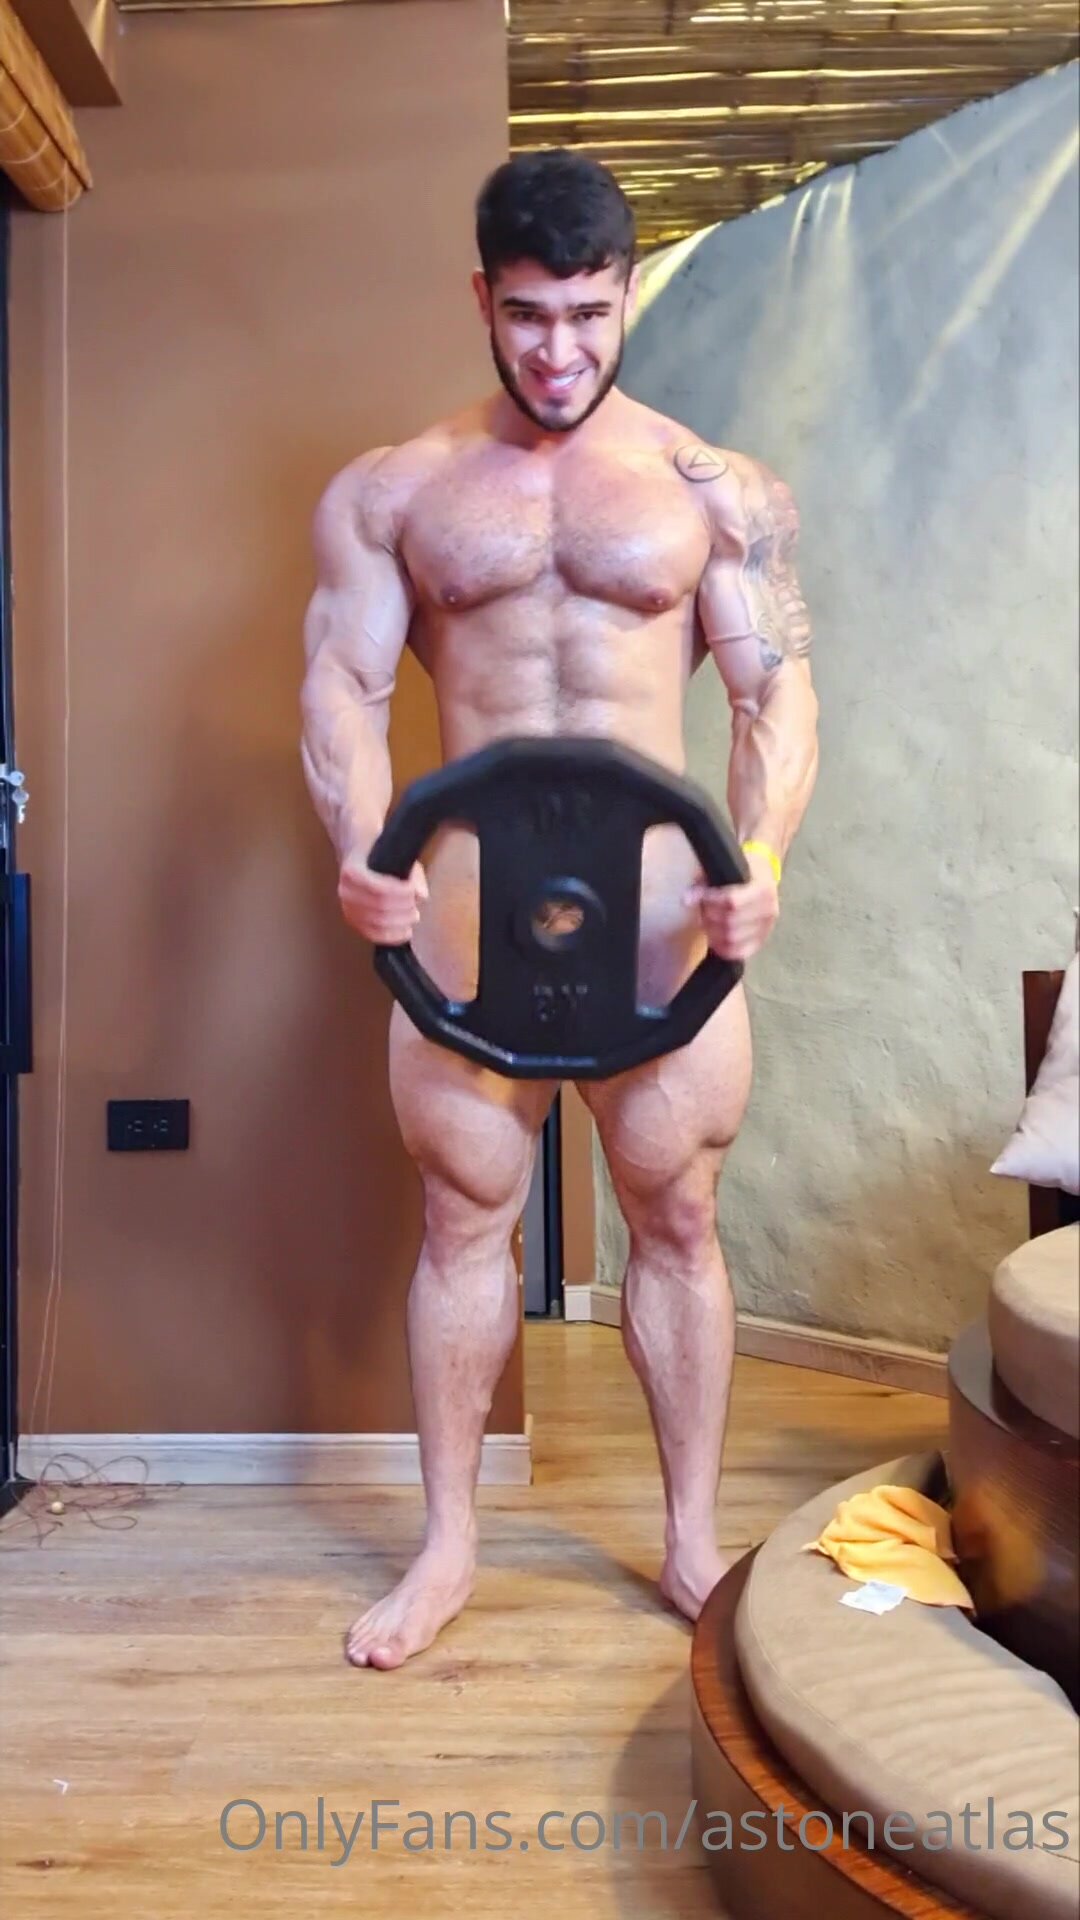 man lifting disk while naked